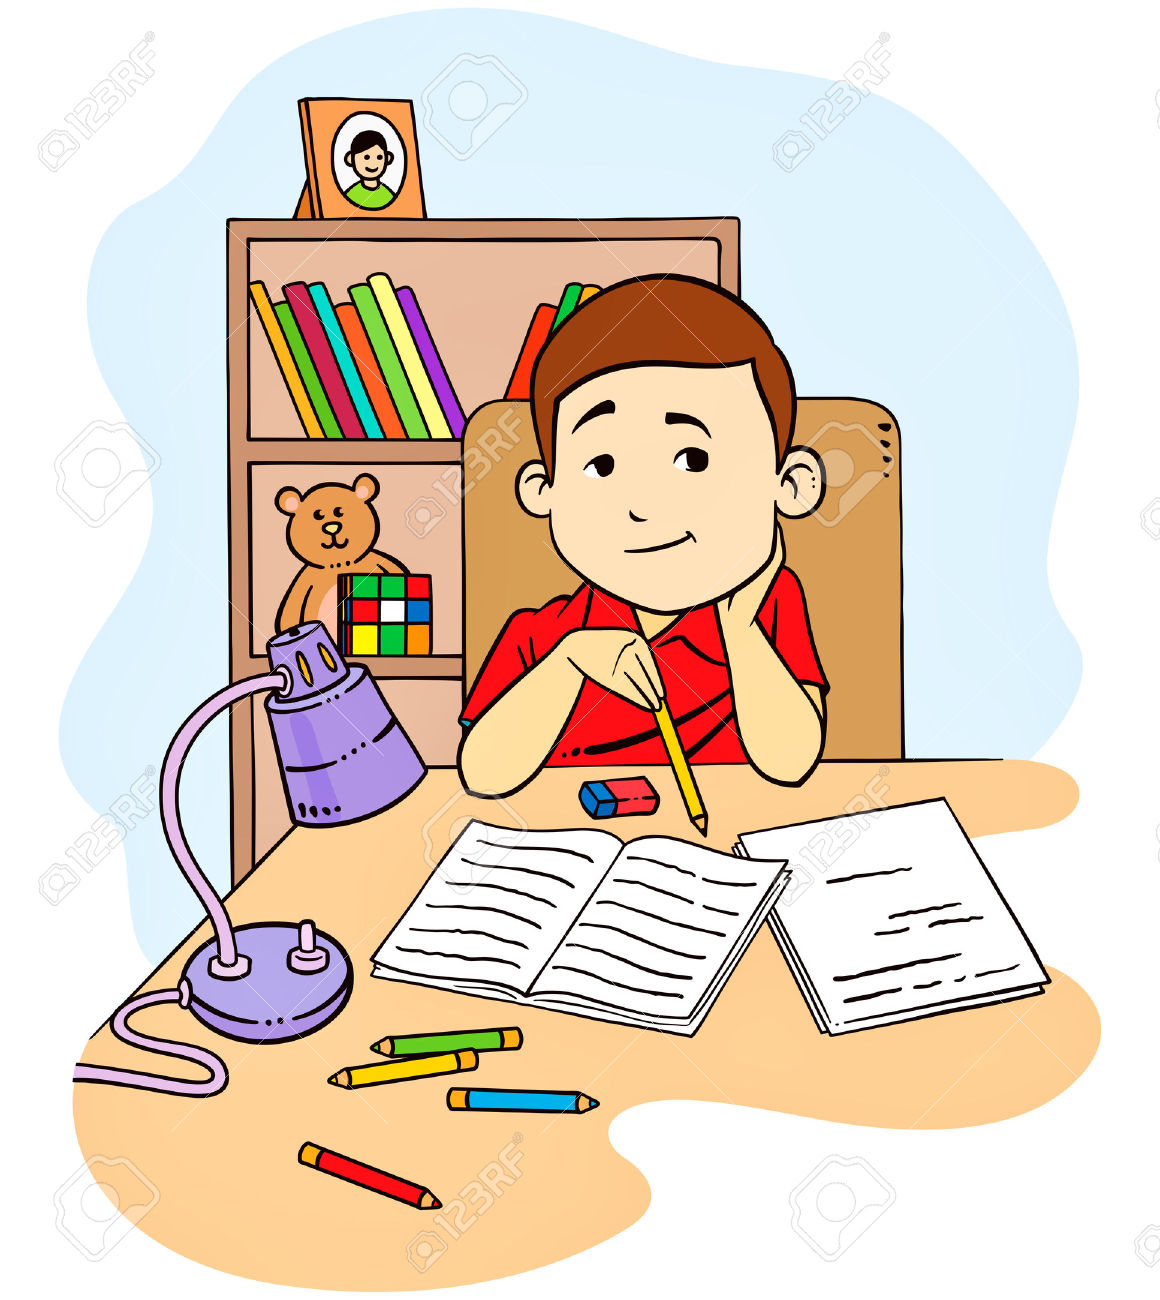 29202747-Una-illustrazione-vettoriale-di-un-bambino-a-studiare-e-fare-i-compiti-nella-sua-camera-da-letto-Archivio-Fotografico